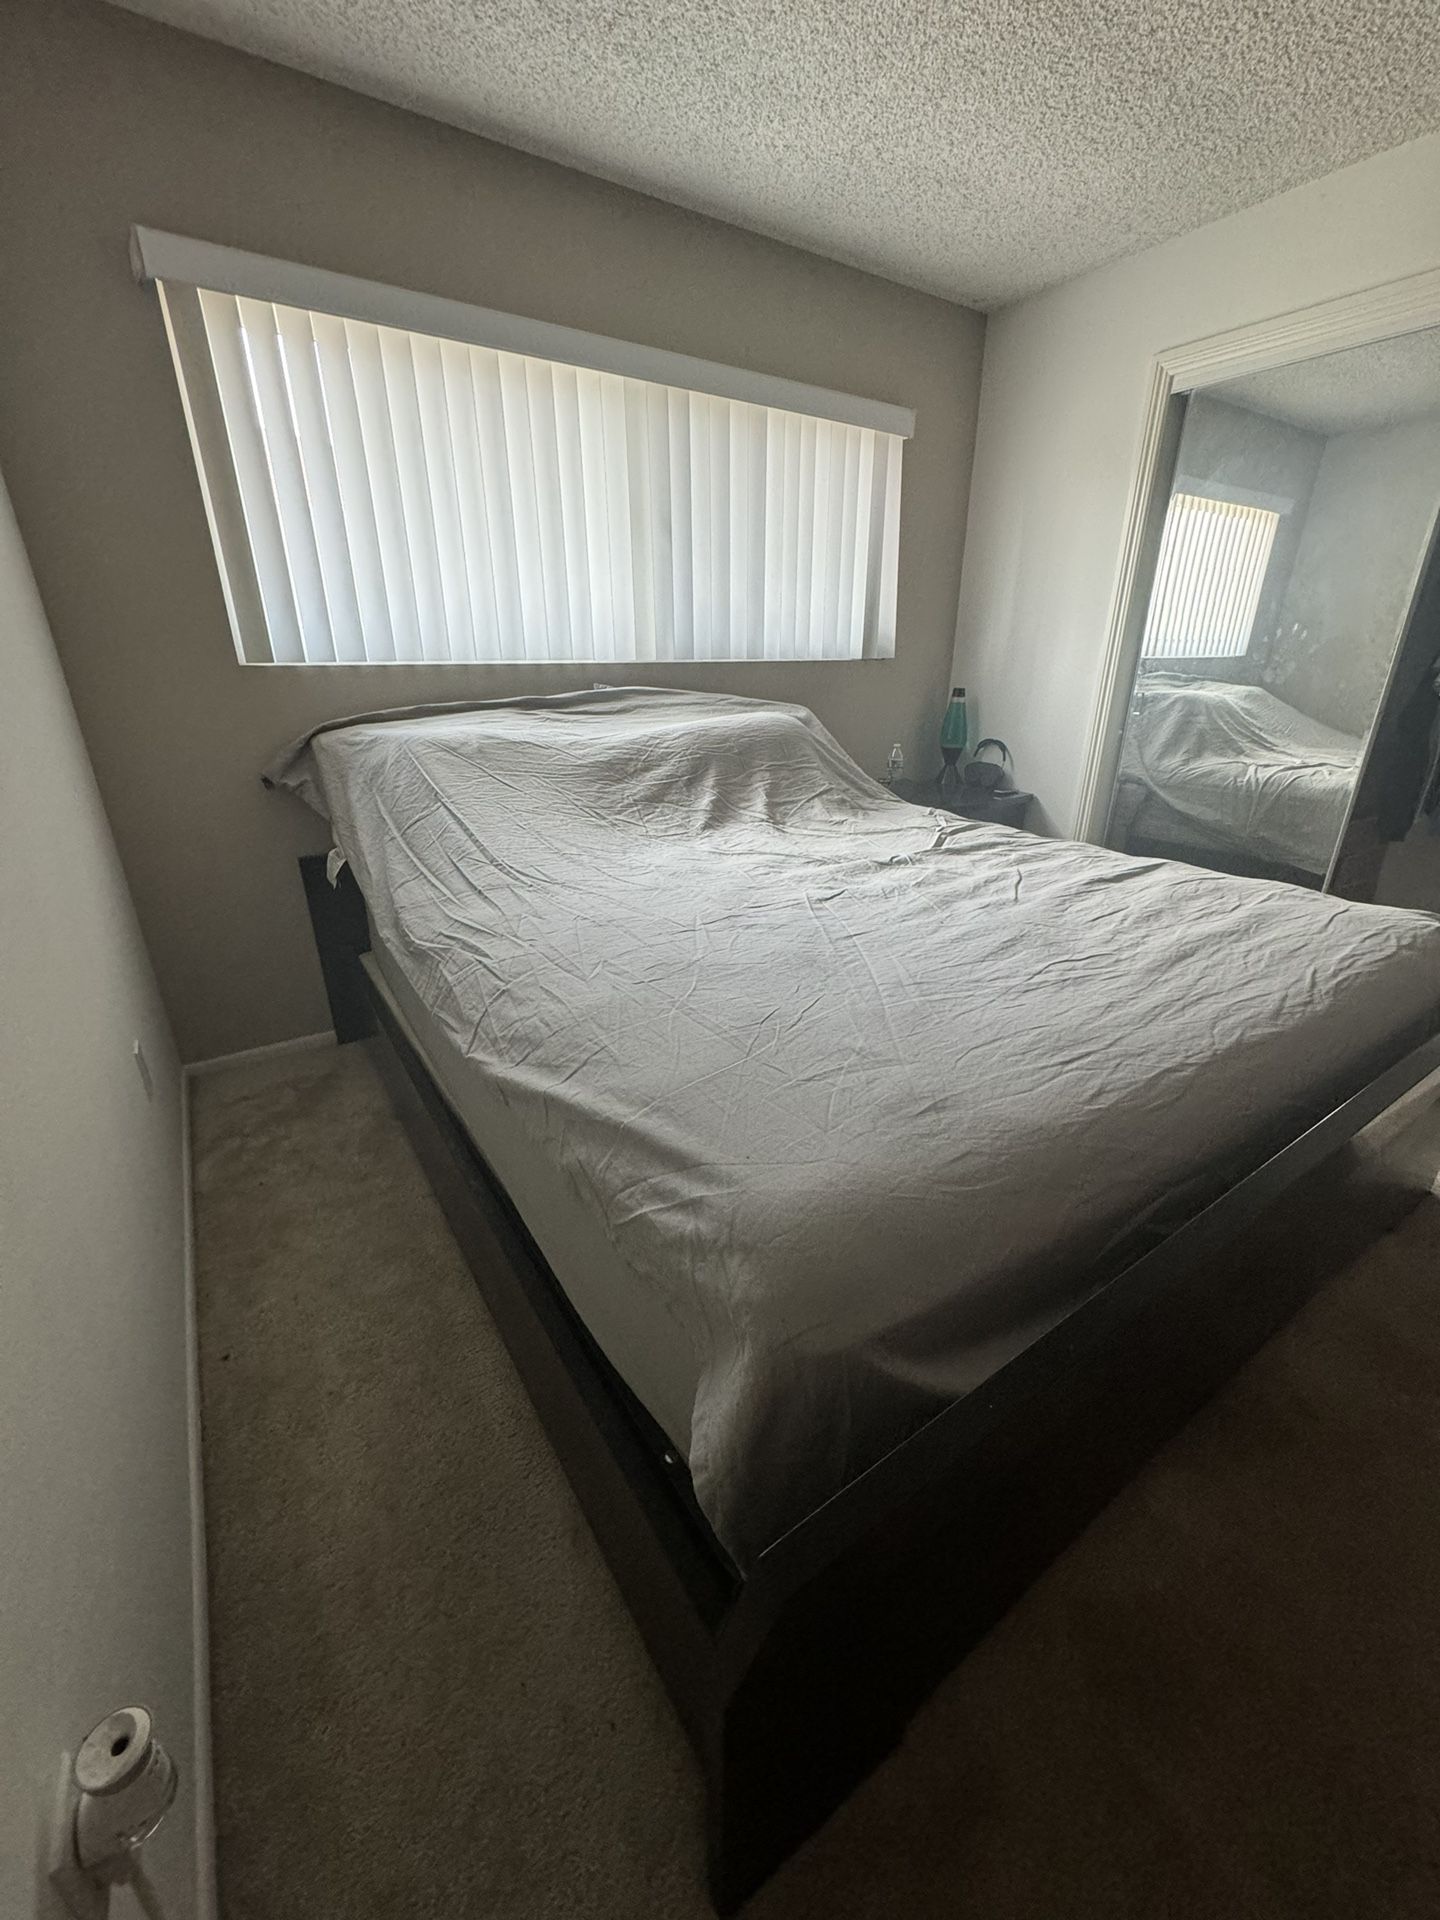 Cali King Bed & Bed Frame 